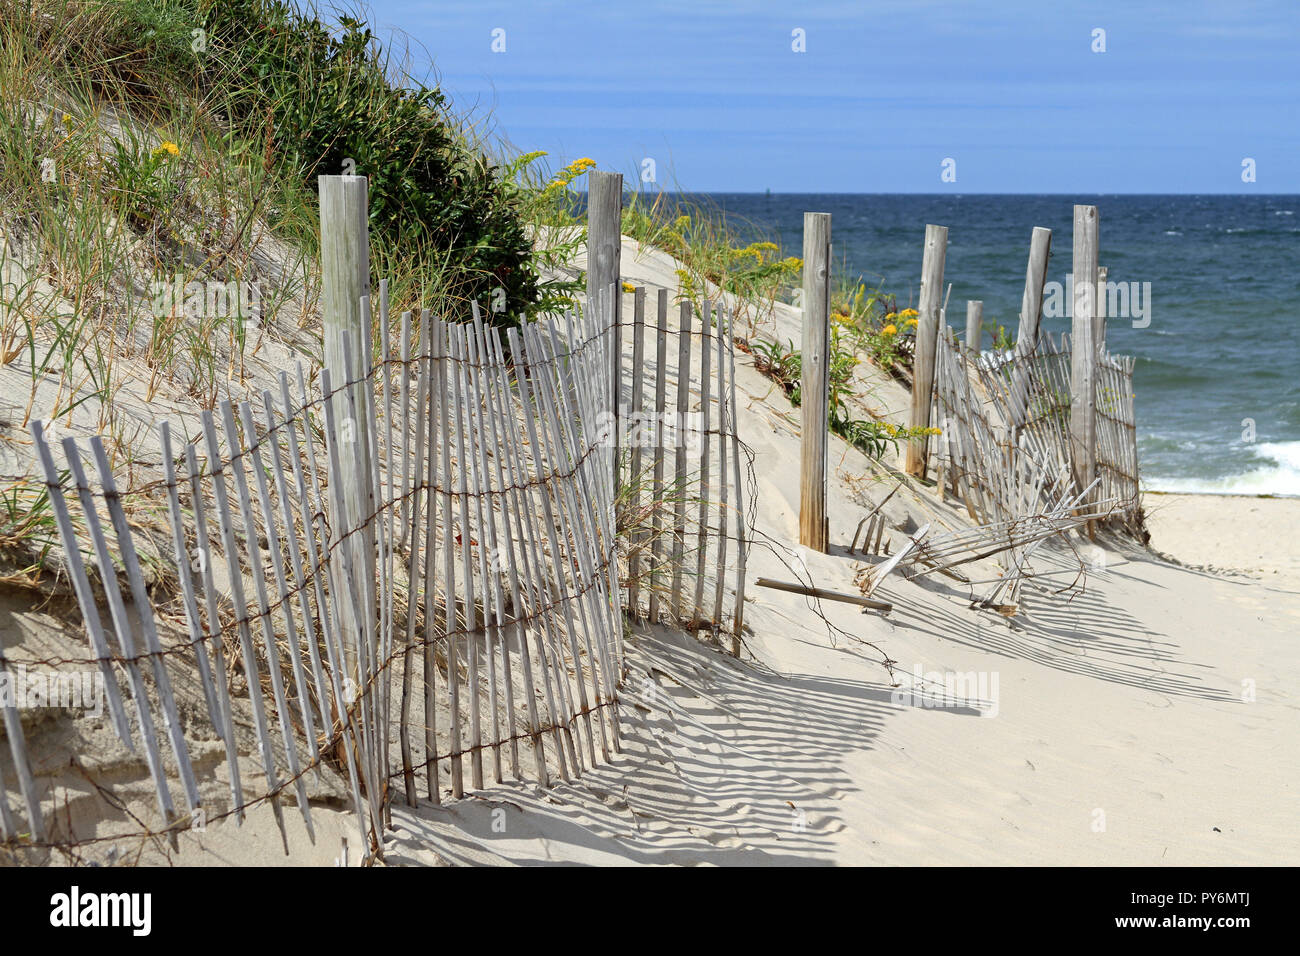 Una valla de madera desvencijadas proteger las dunas de arena a lo largo de un camino que marca la entrada a la playa de almacenamiento en frío en Cape Cod en East Dennis, Massachusetts Foto de stock